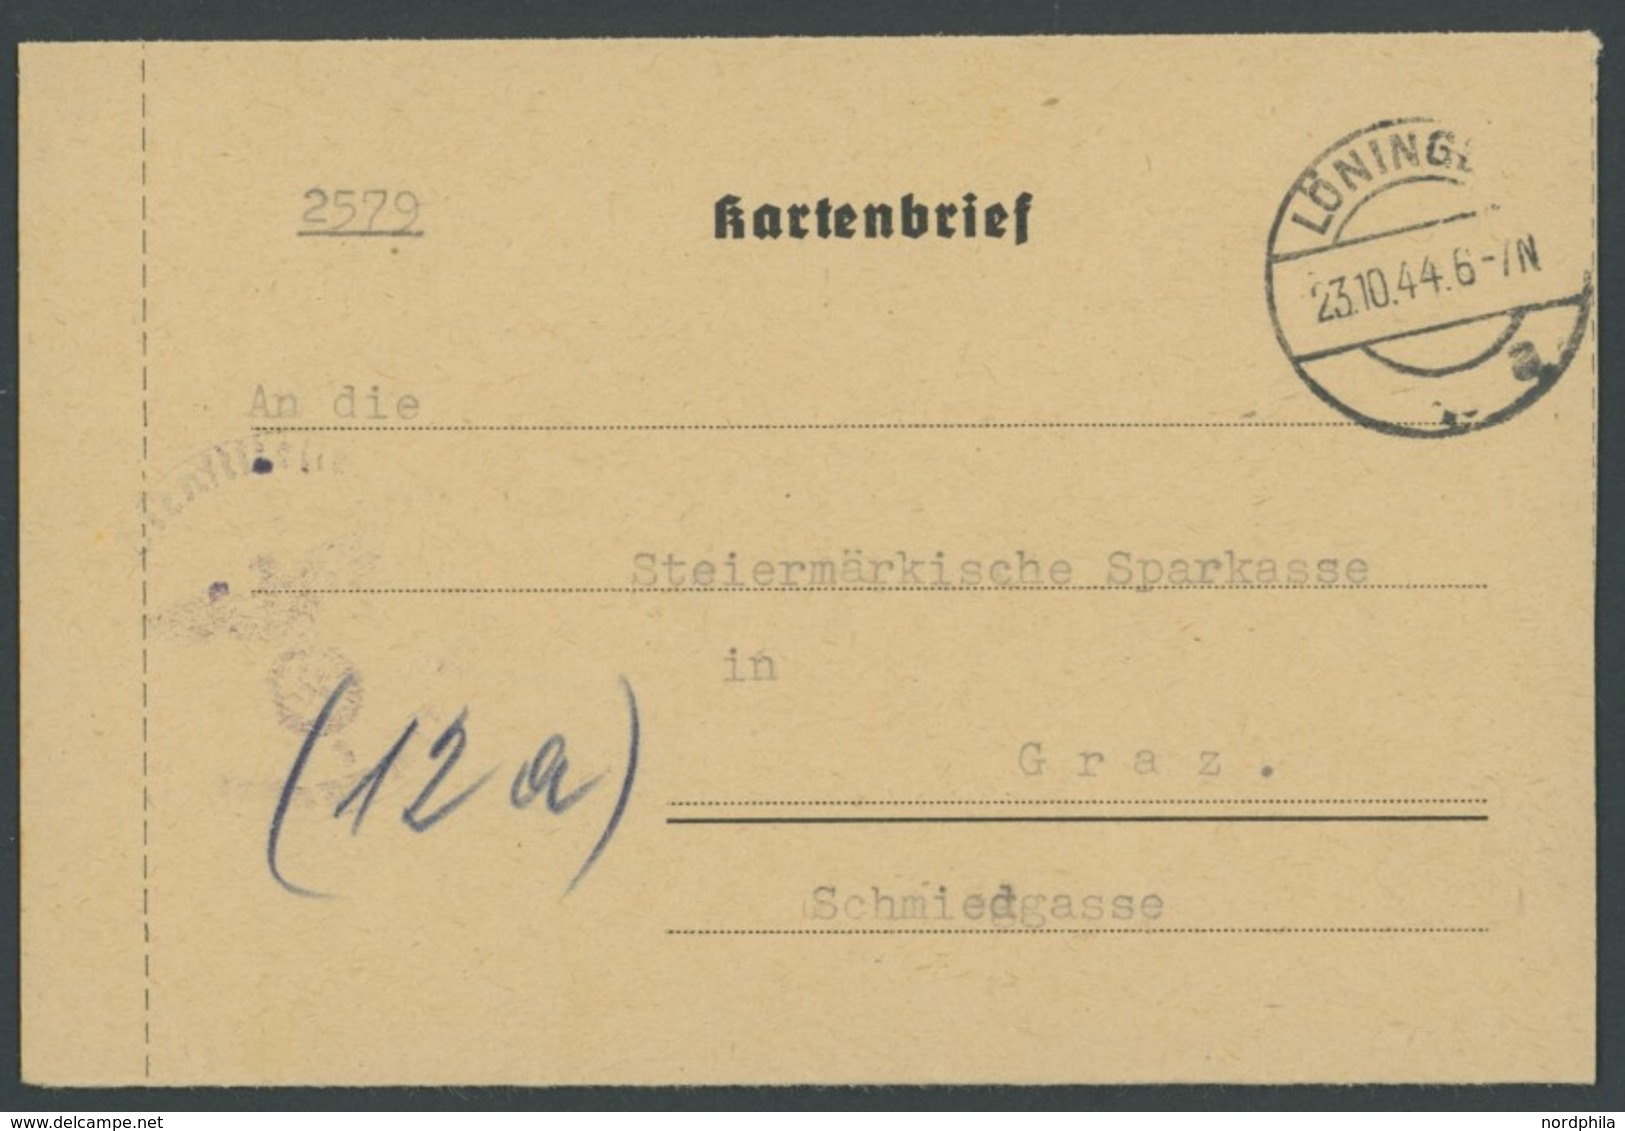 FELDPOST II. WK BELEGE 1944, FRUNDSBERG 10. SS PANZERDIVISION, FP-Nr 25520 (Änderung Von 25920), Kartenbrief LÖNINGEN Na - Occupation 1938-45